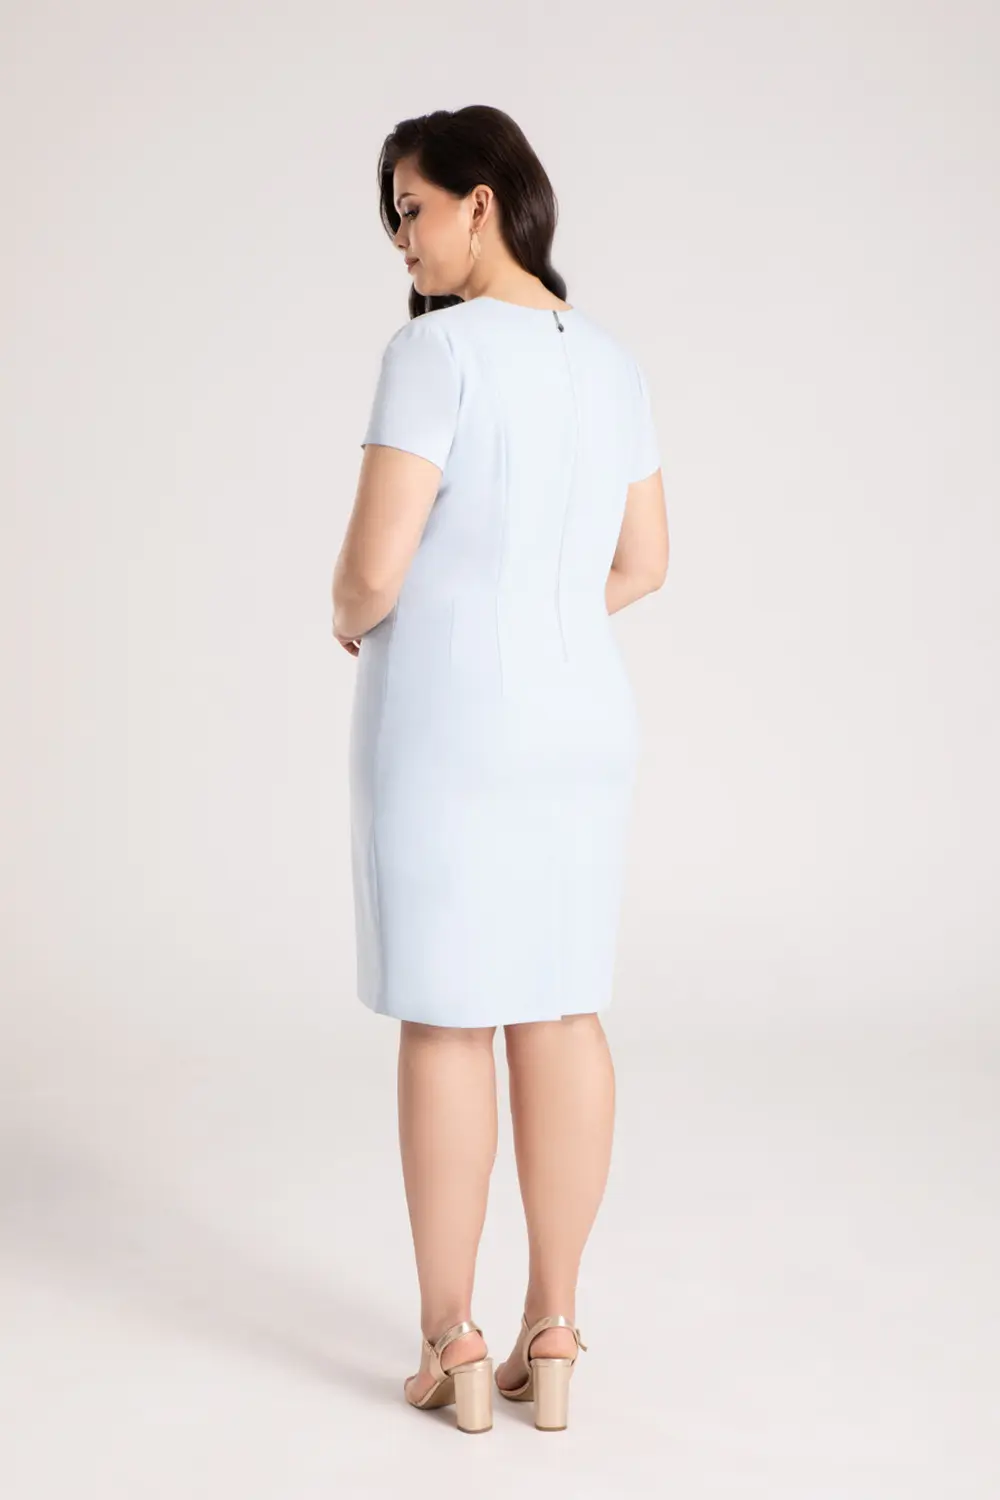 sukienka ołówkowa z krótkim rękawkiem błękitna polska marka Vito Vergelis